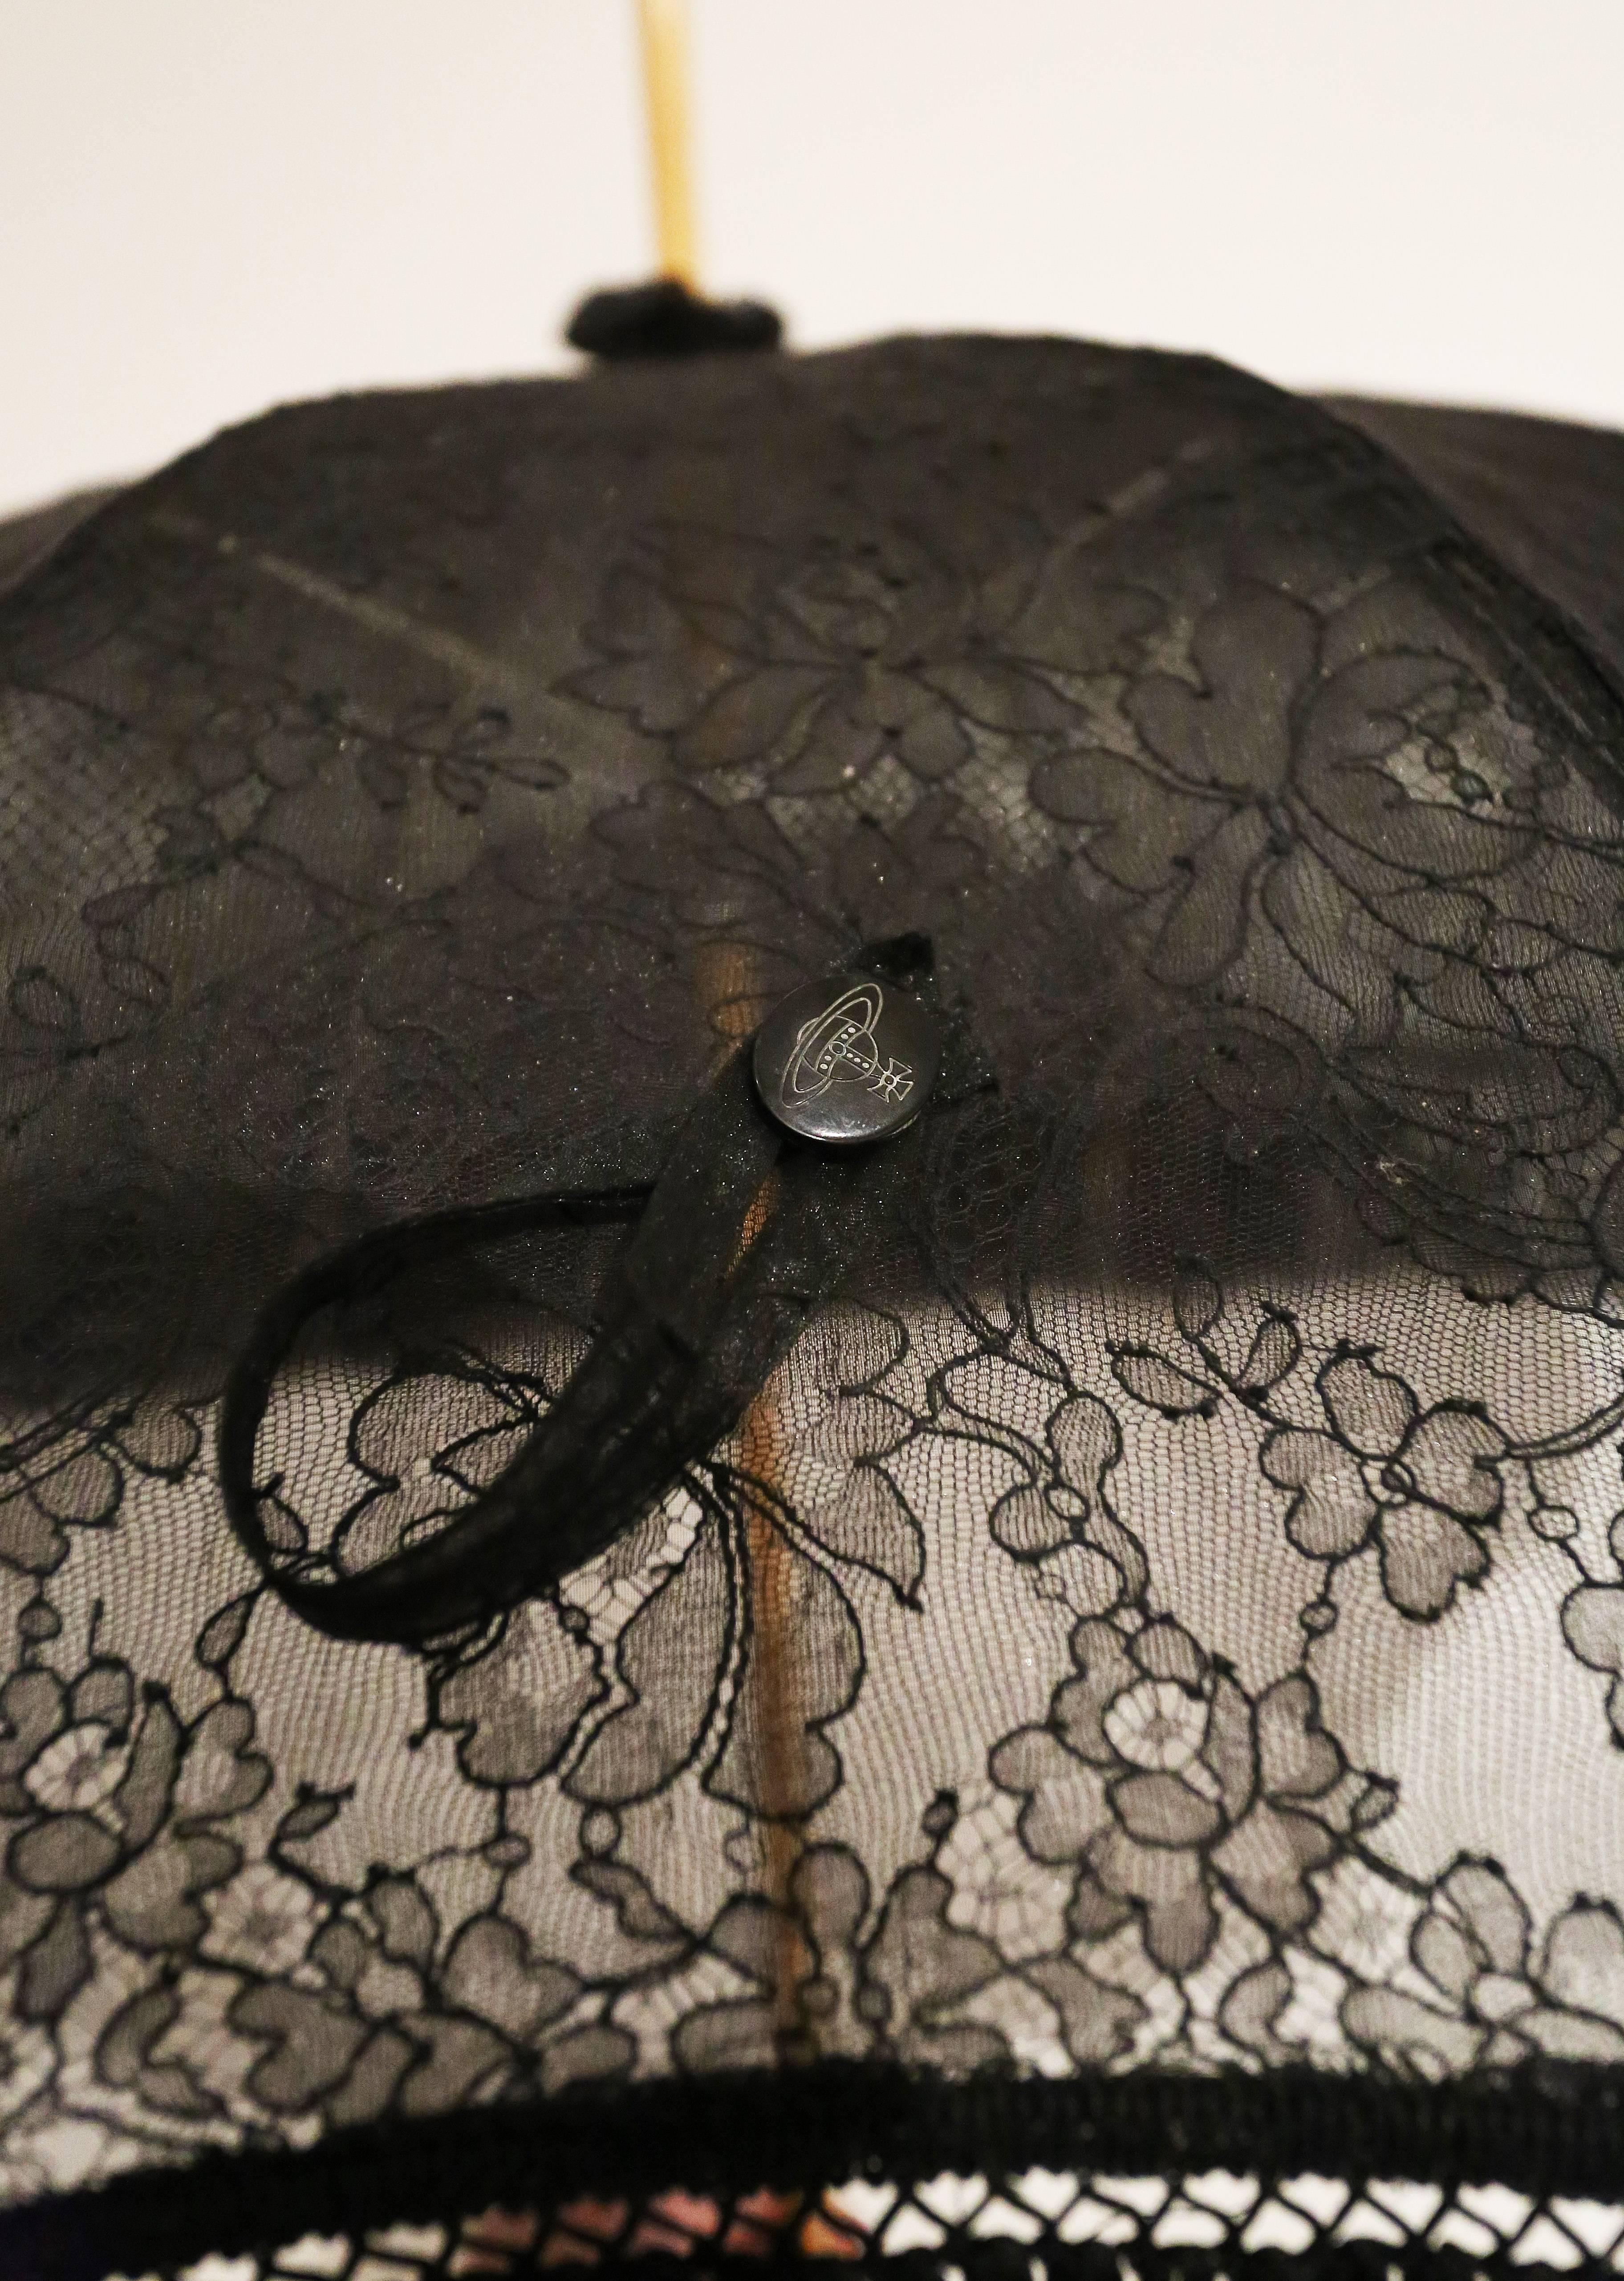 Black Vivienne Westwood black lace parasol, c. 1990s